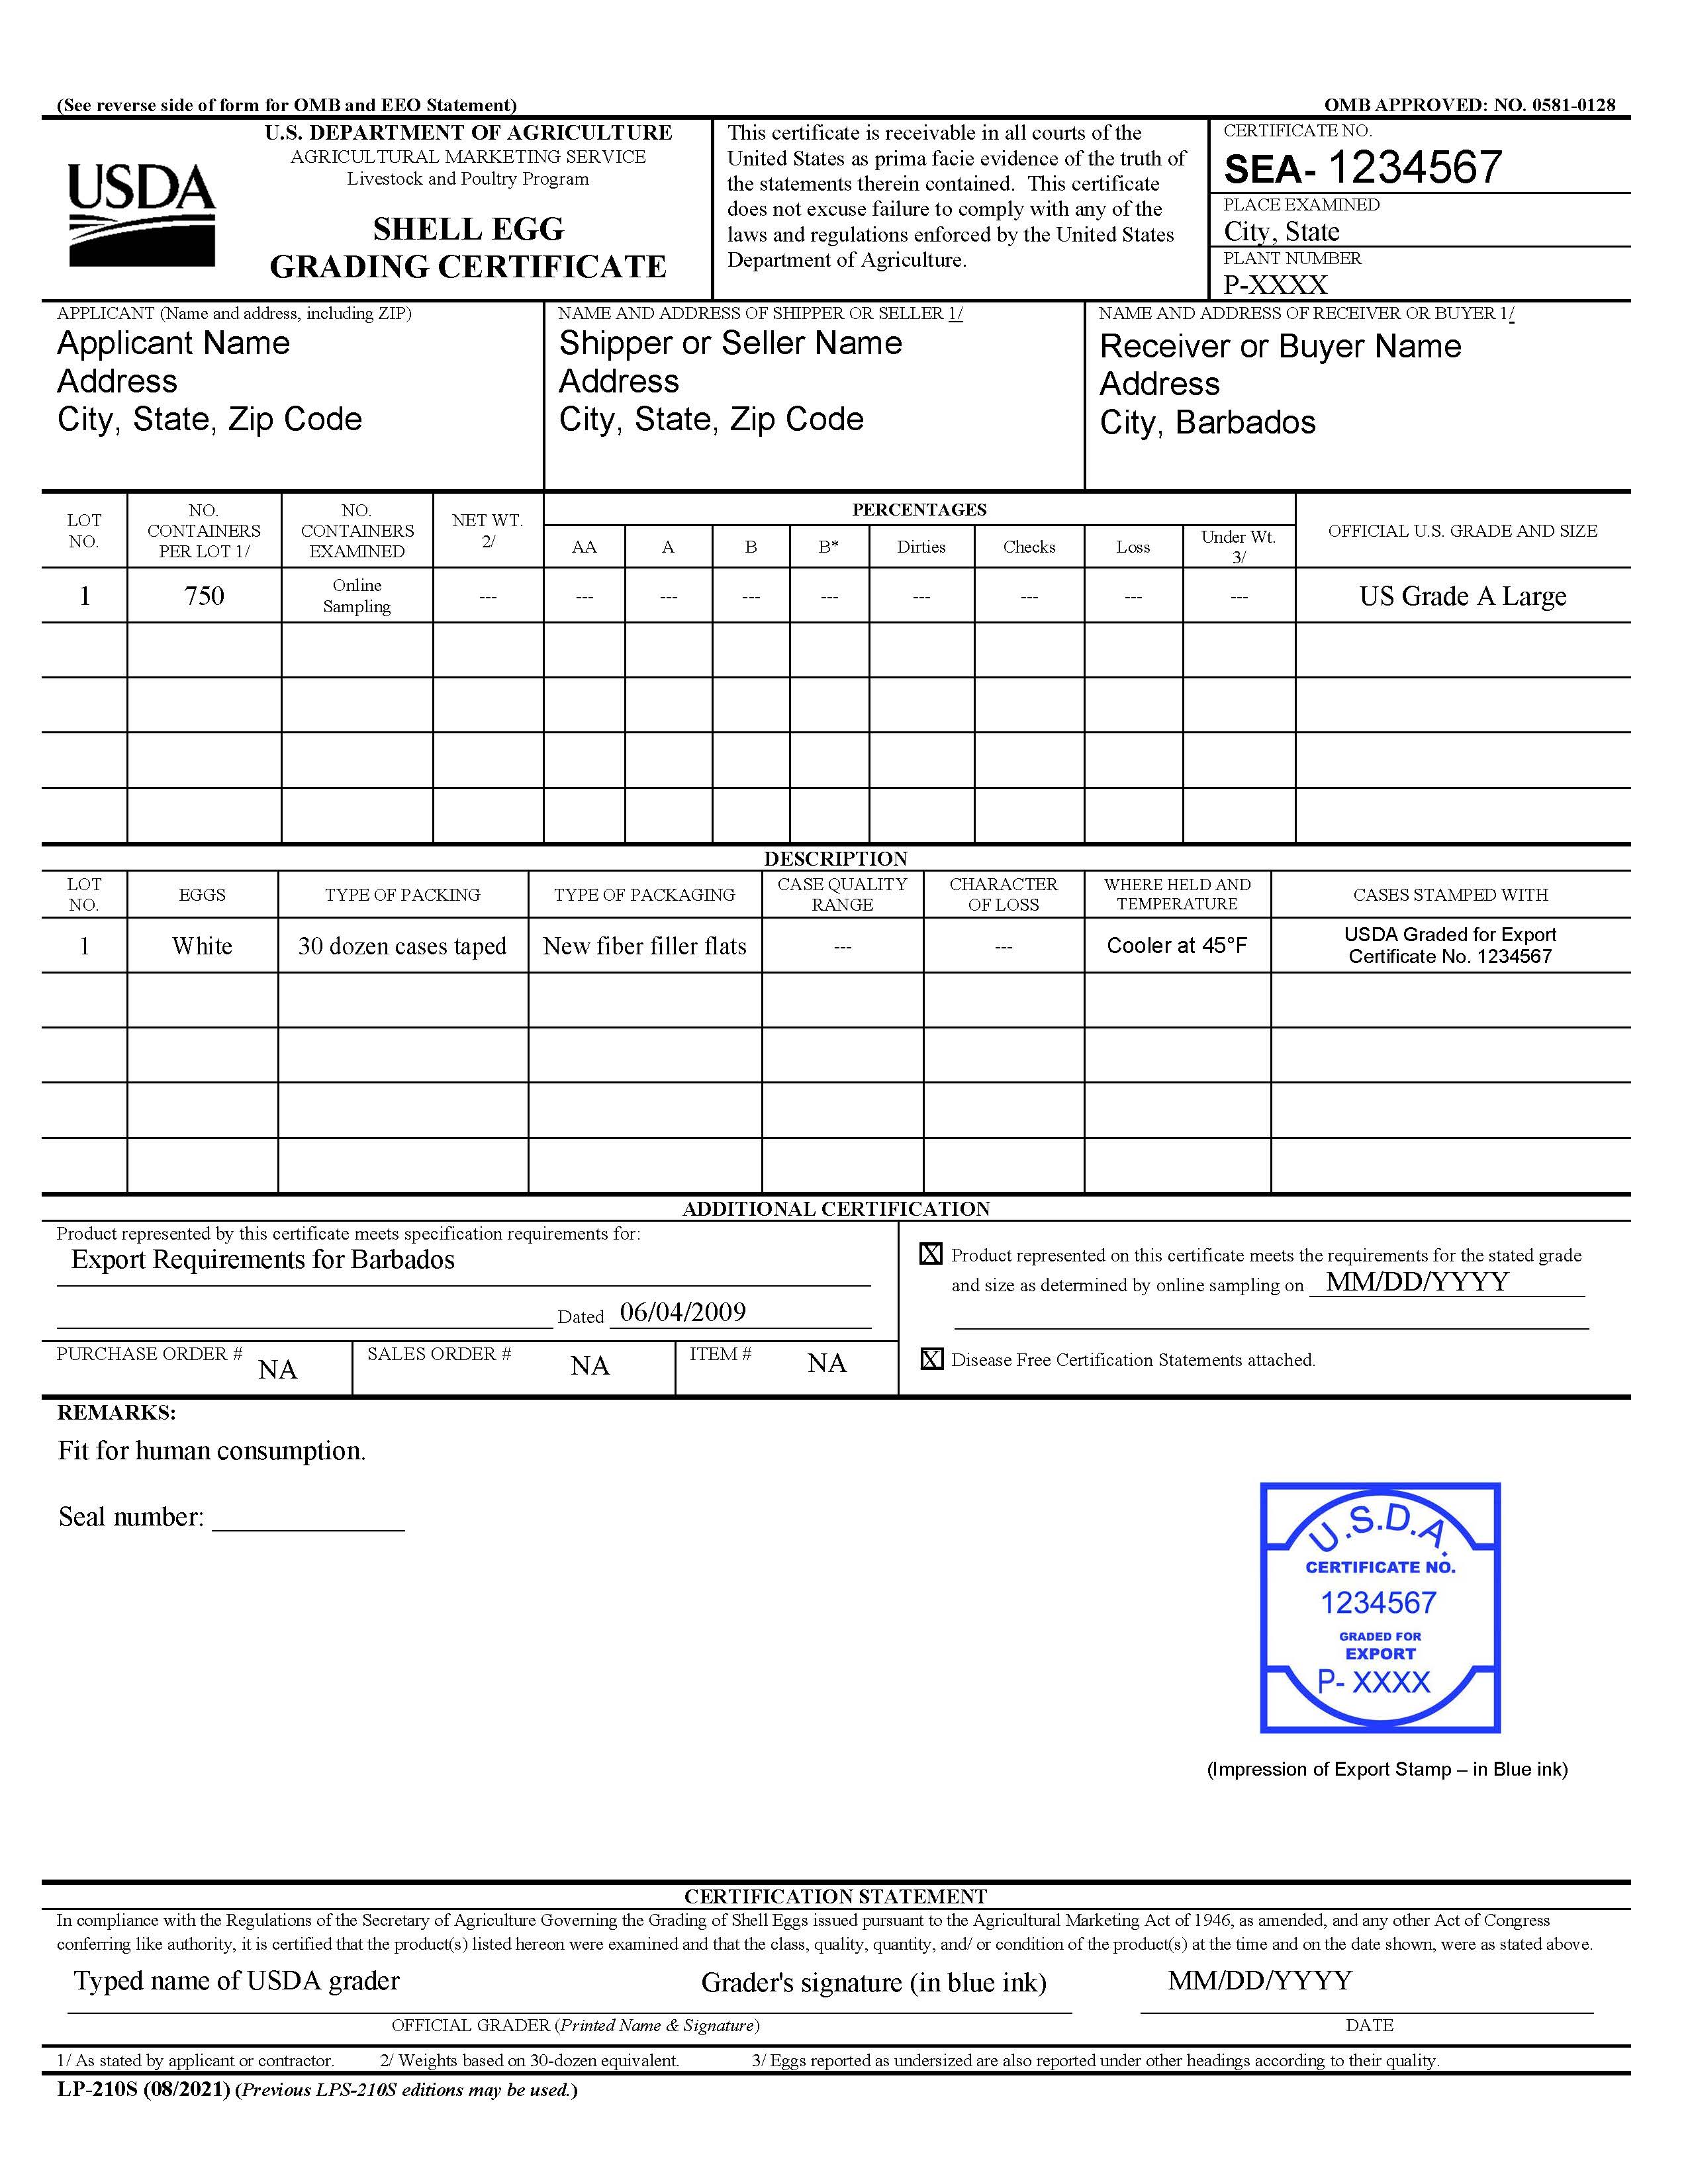 Sample LP 210S Form